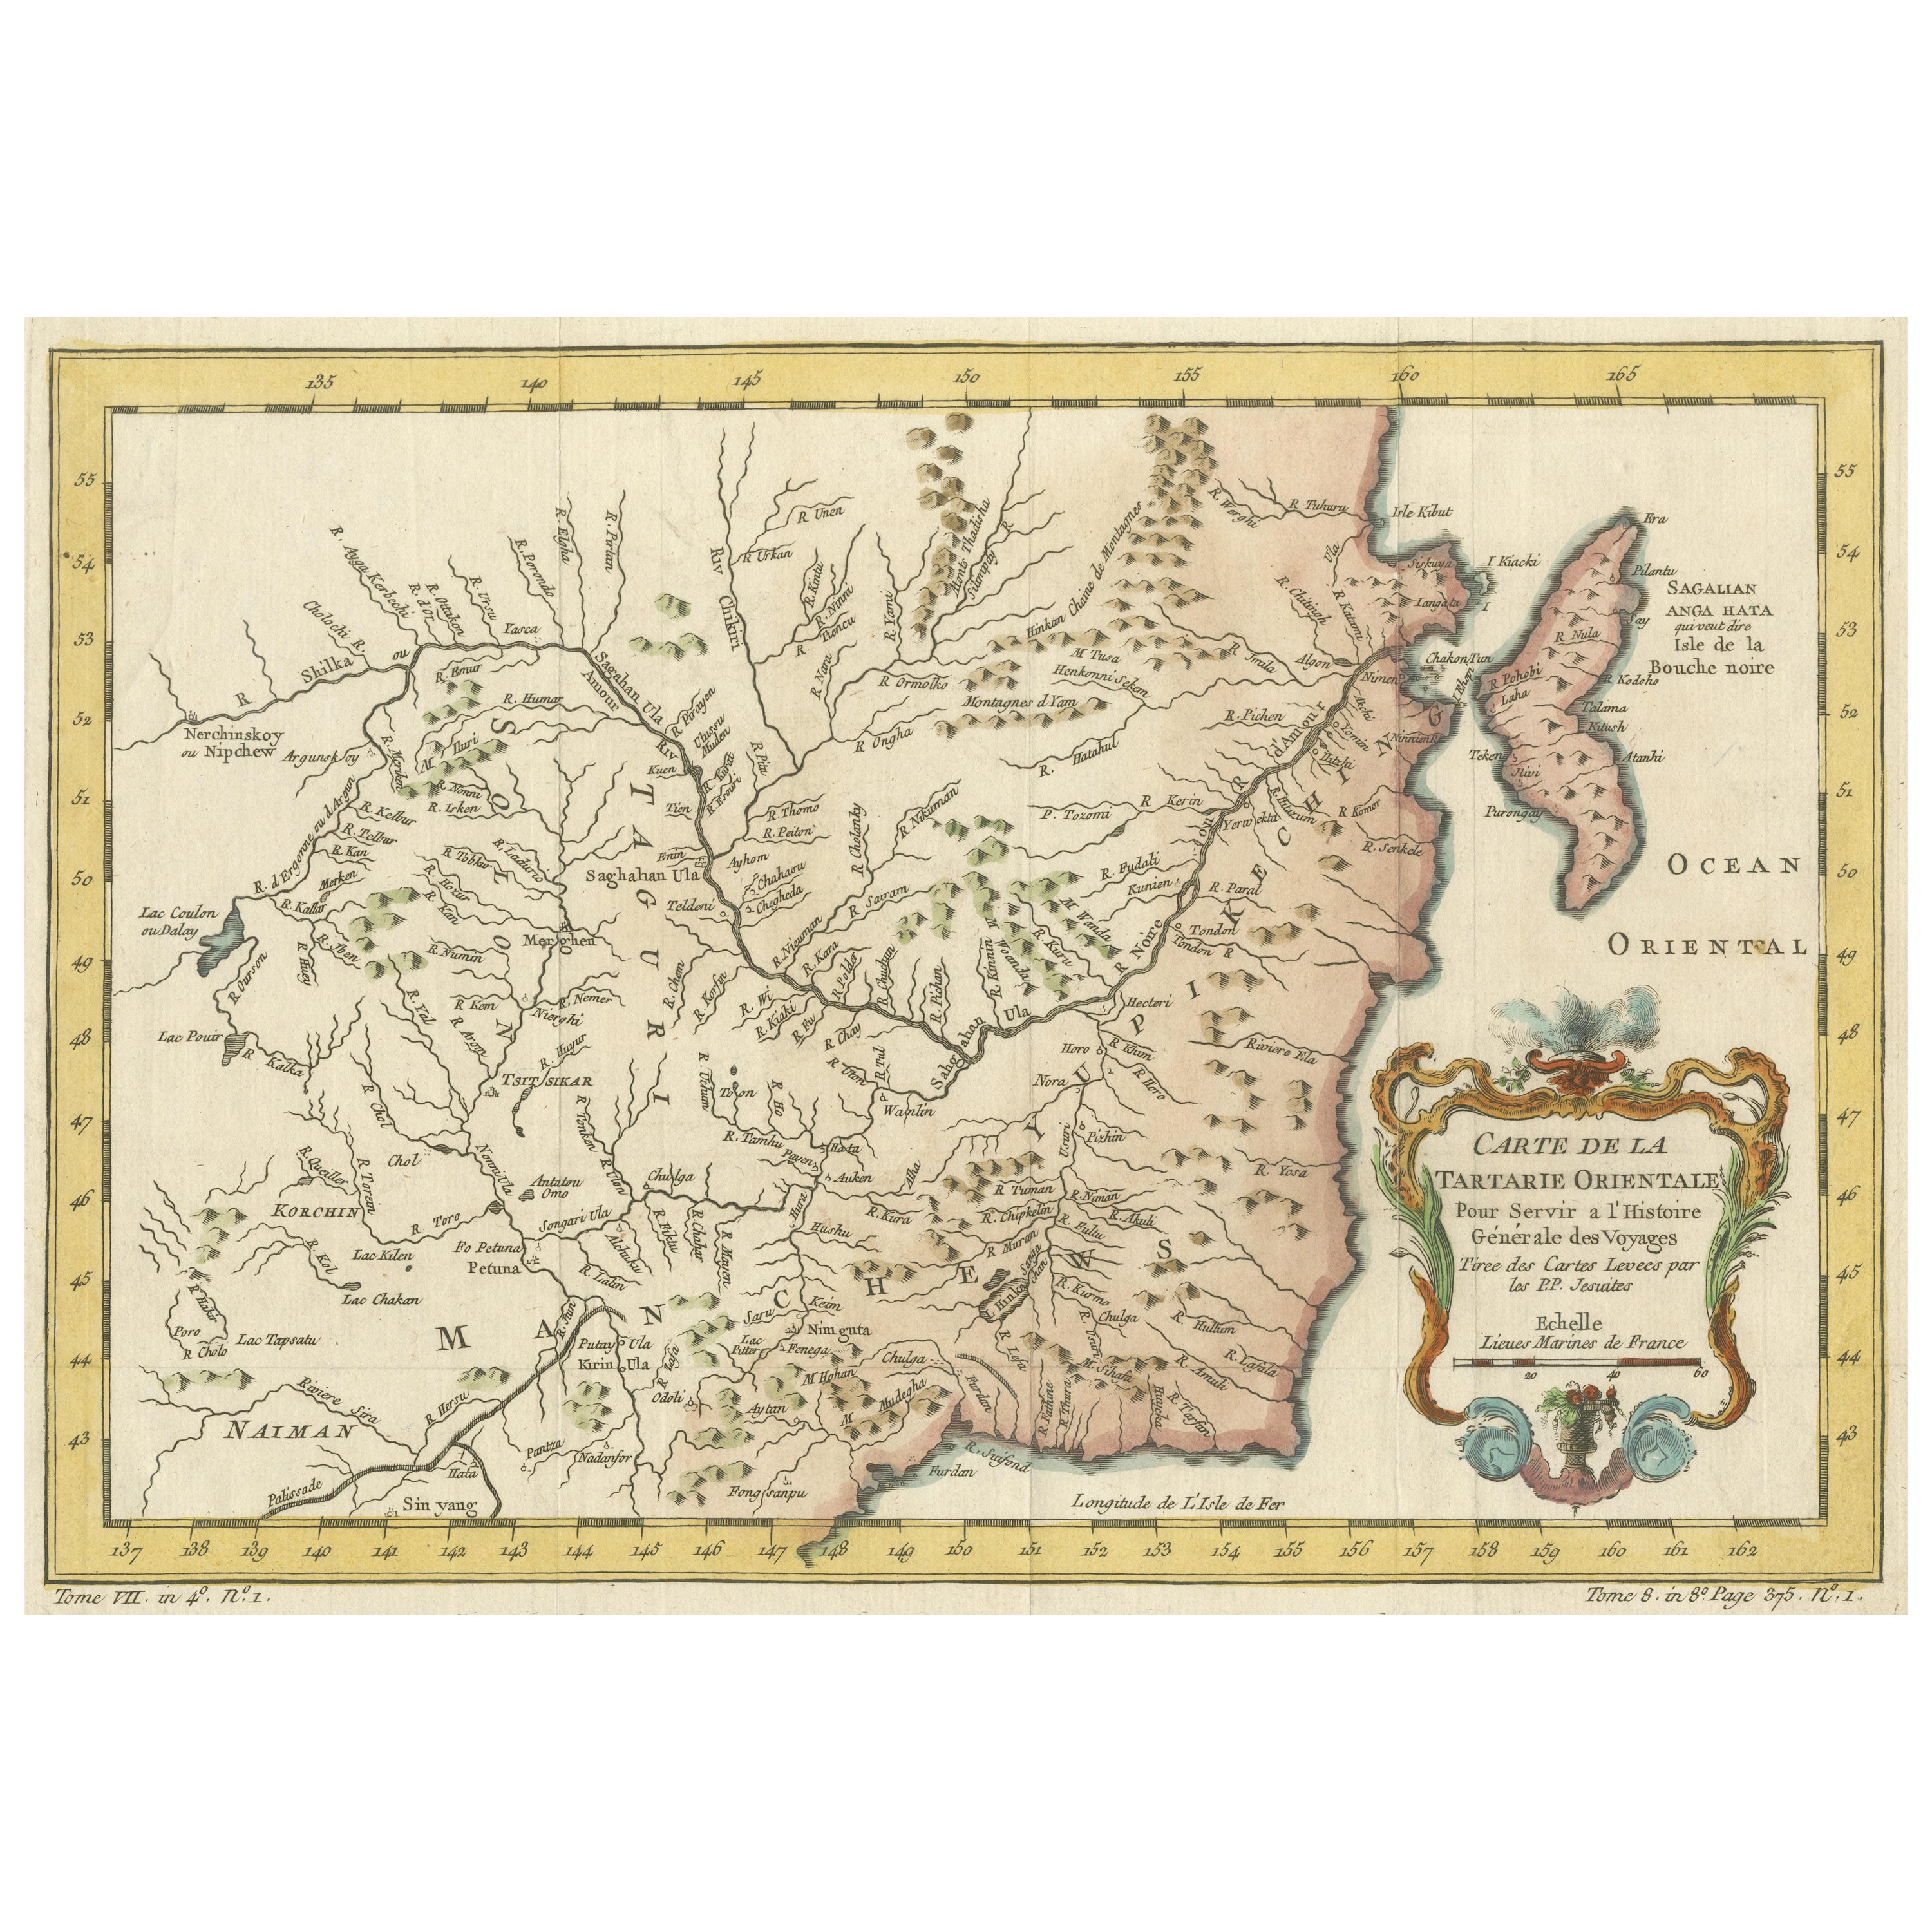 La cartographie de la Tartarie orientale : Une collaboration entre jésuites et anglais au XVIIIe siècle, 1757